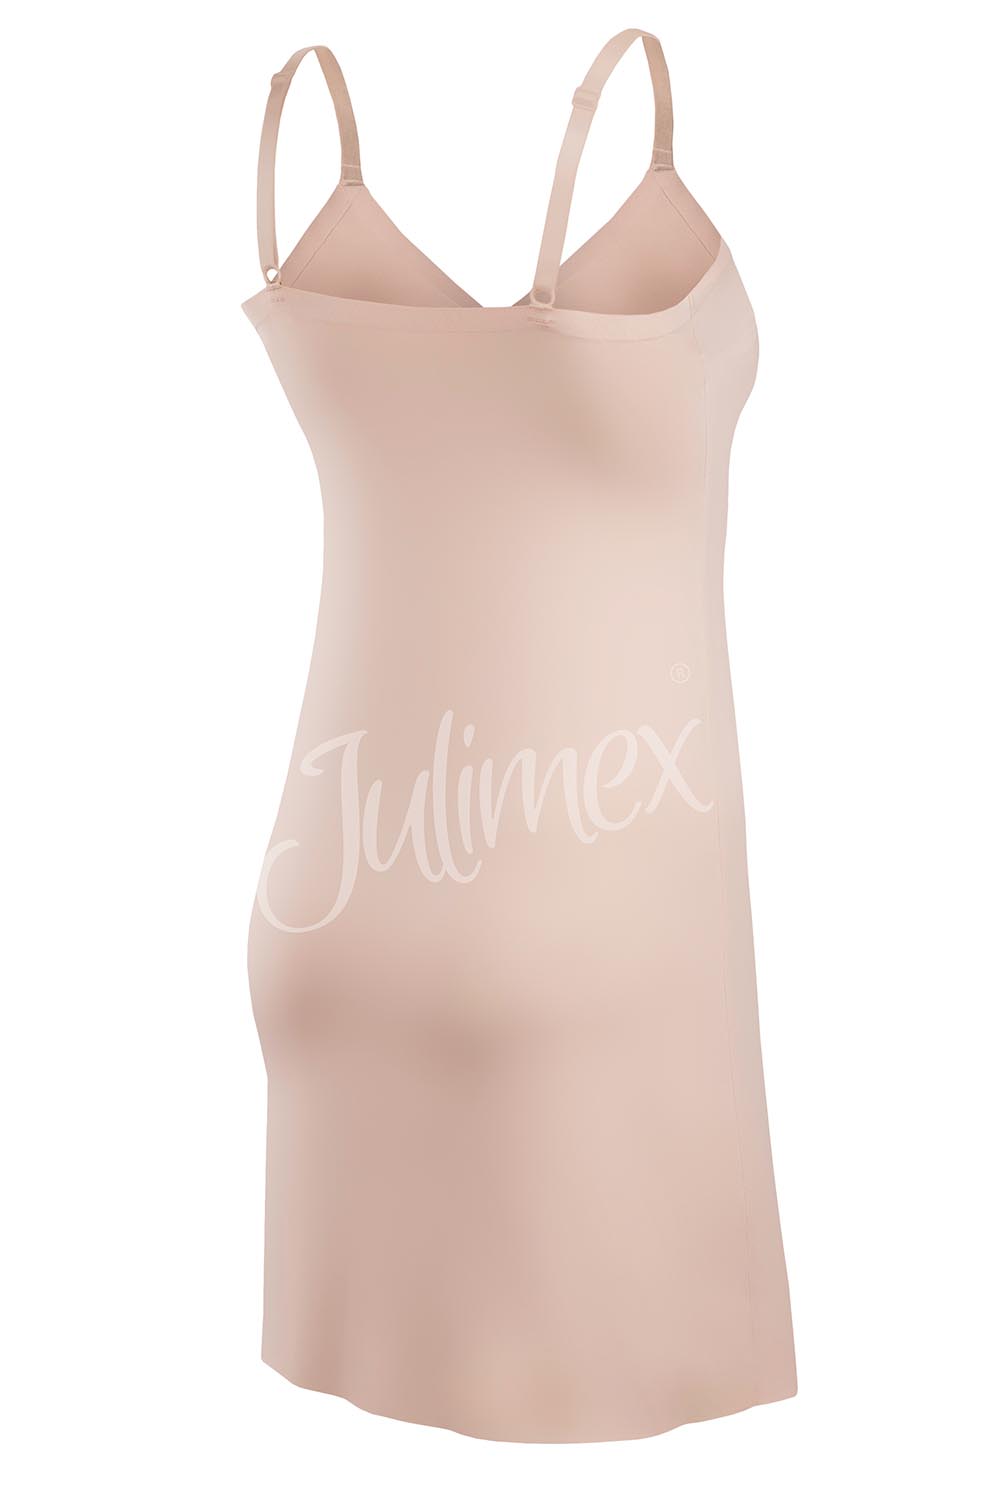 Julimex Damen Unterrock Musterlos Lingerie Soft & Smooth slip, Beige Beige  | | DUmalDU | Unterkleider